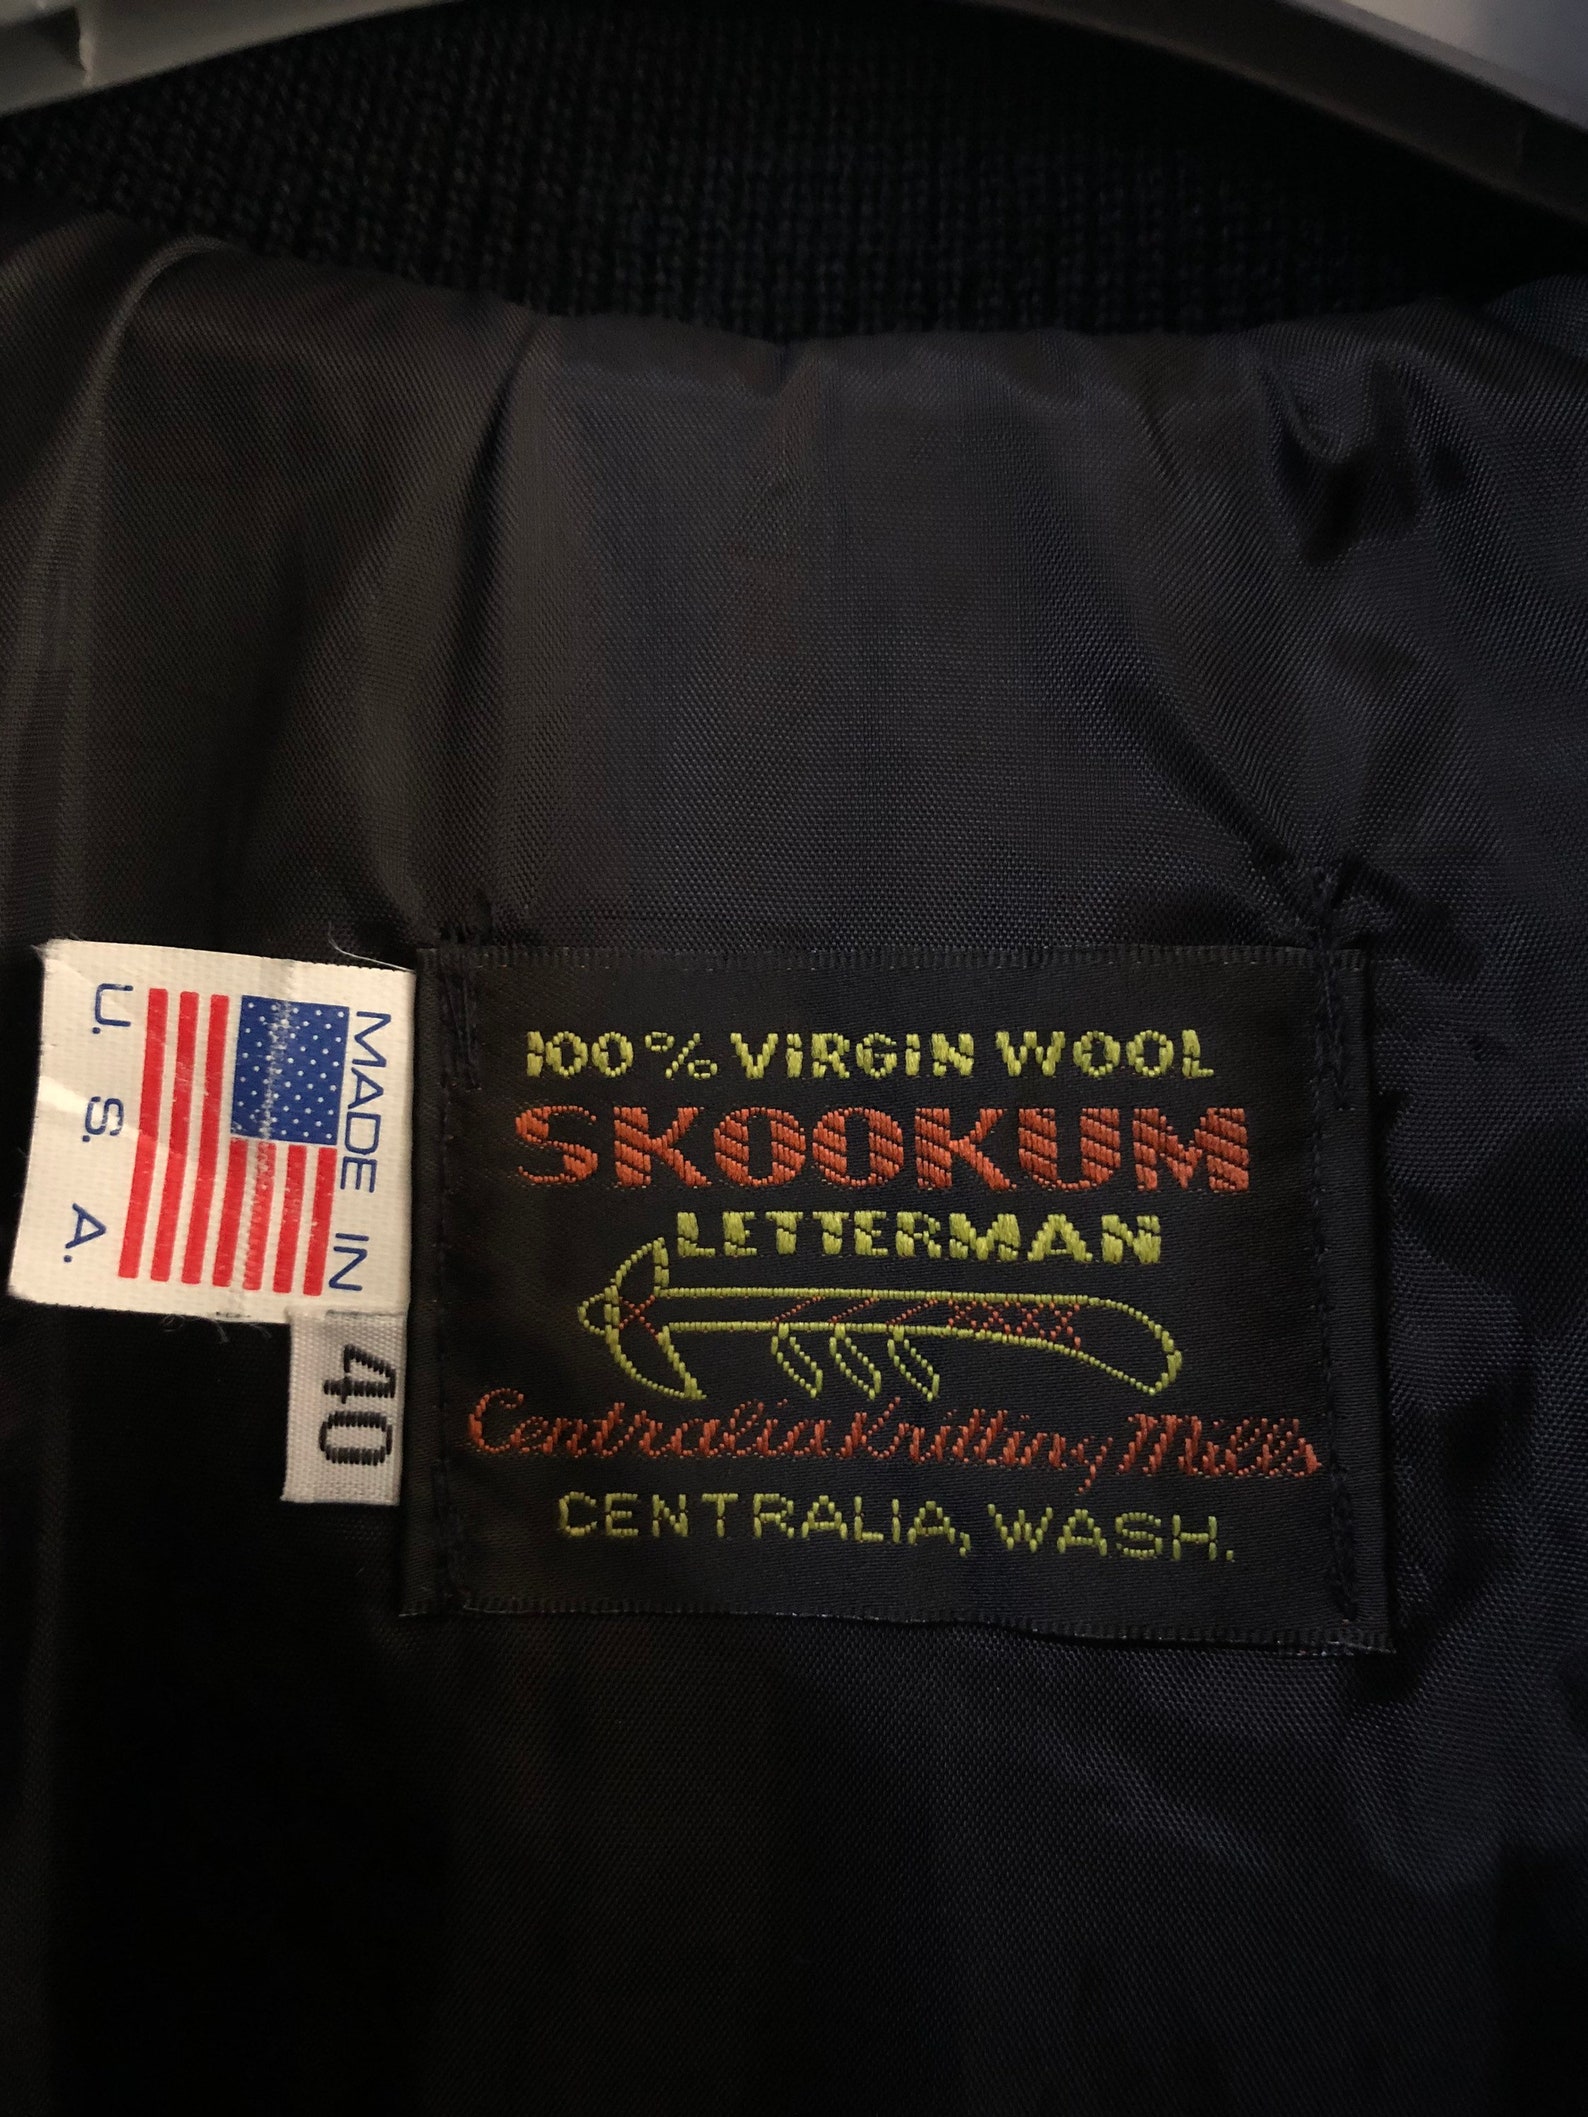 RARE VTG Skookum Letterman Centralia Virgin Wools Maden in | Etsy